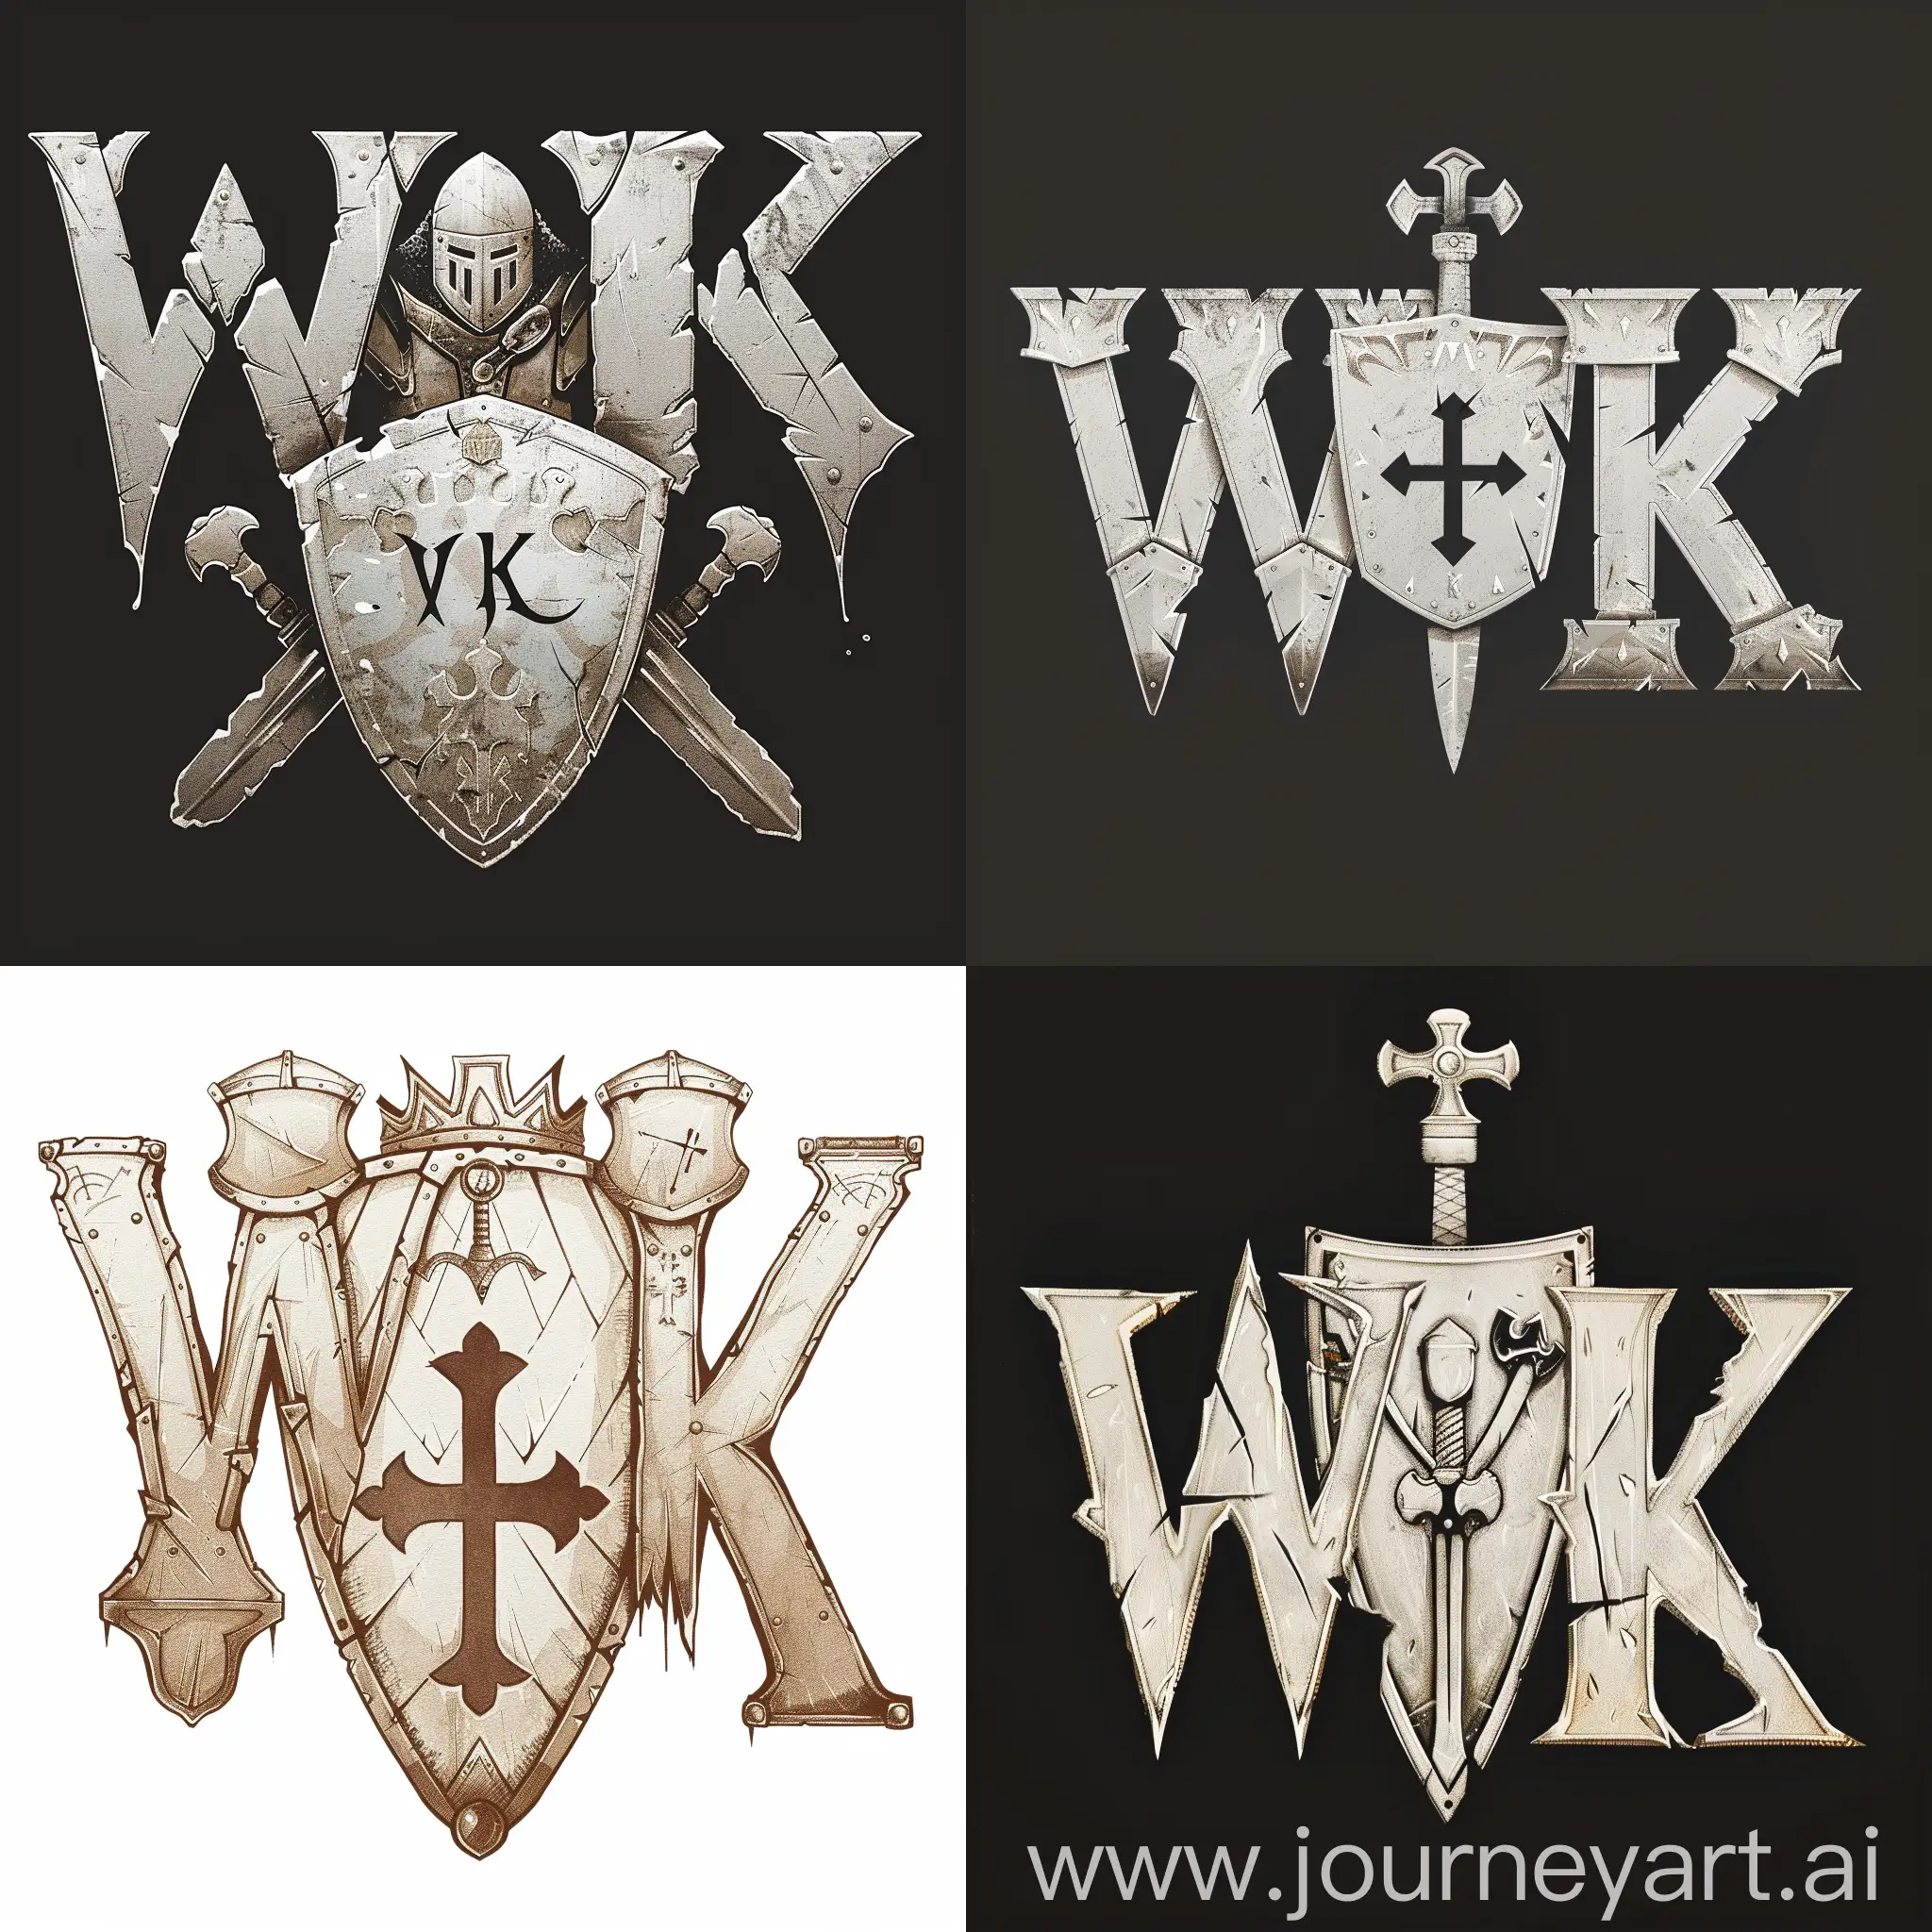 Логотип "WK", где каждая буква "W" и "K" стилизована в виде частей белых доспехов рыцаря, между буквами изображен белый щит с гербом, цветовая гамма белый цвет для доспехов, стилизованный средневековый шрифт для написания "WK" в форме доспехов